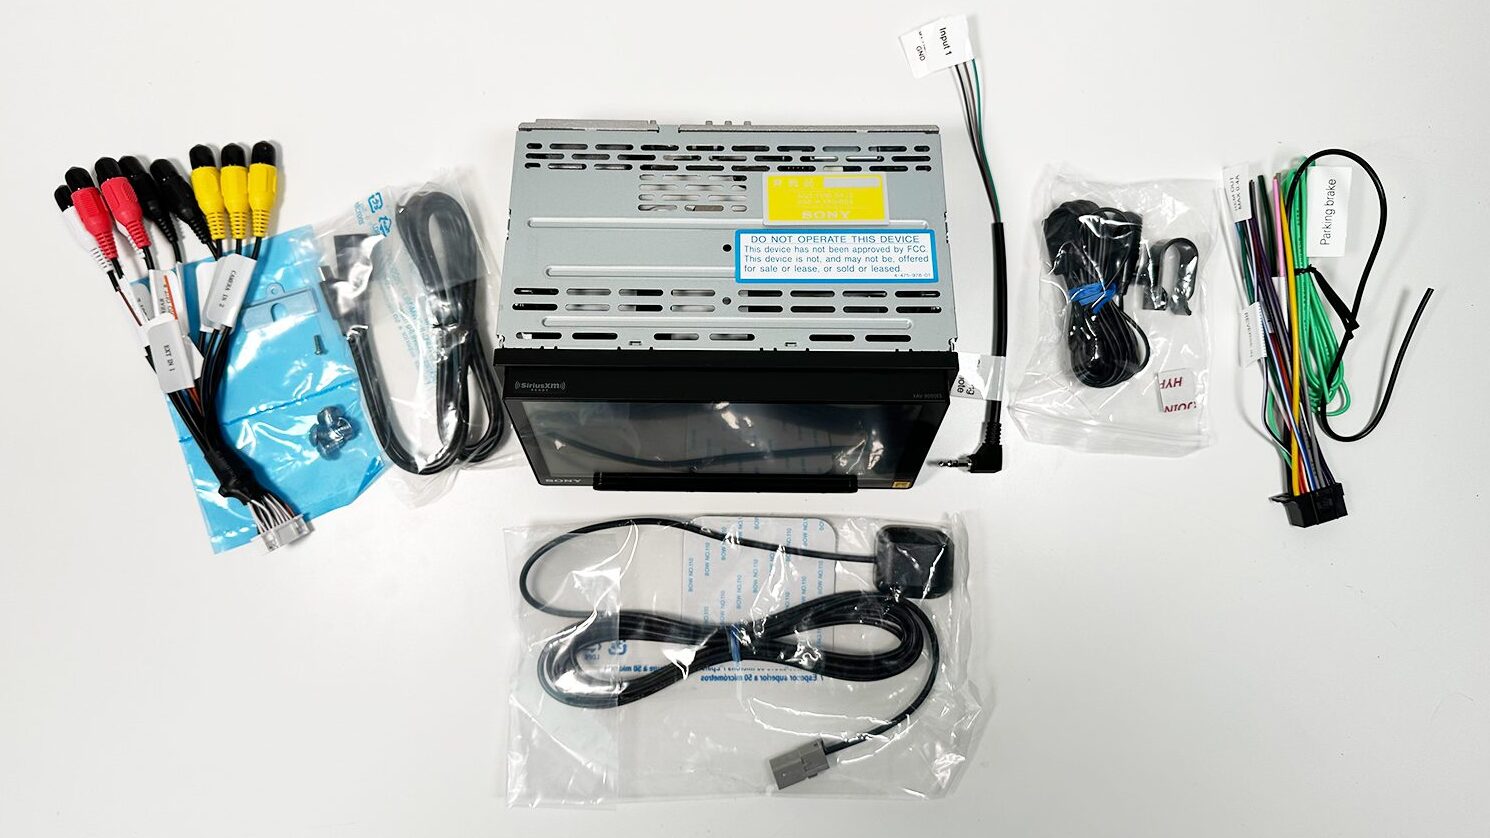 Sony XAV-AX9000 components in the box